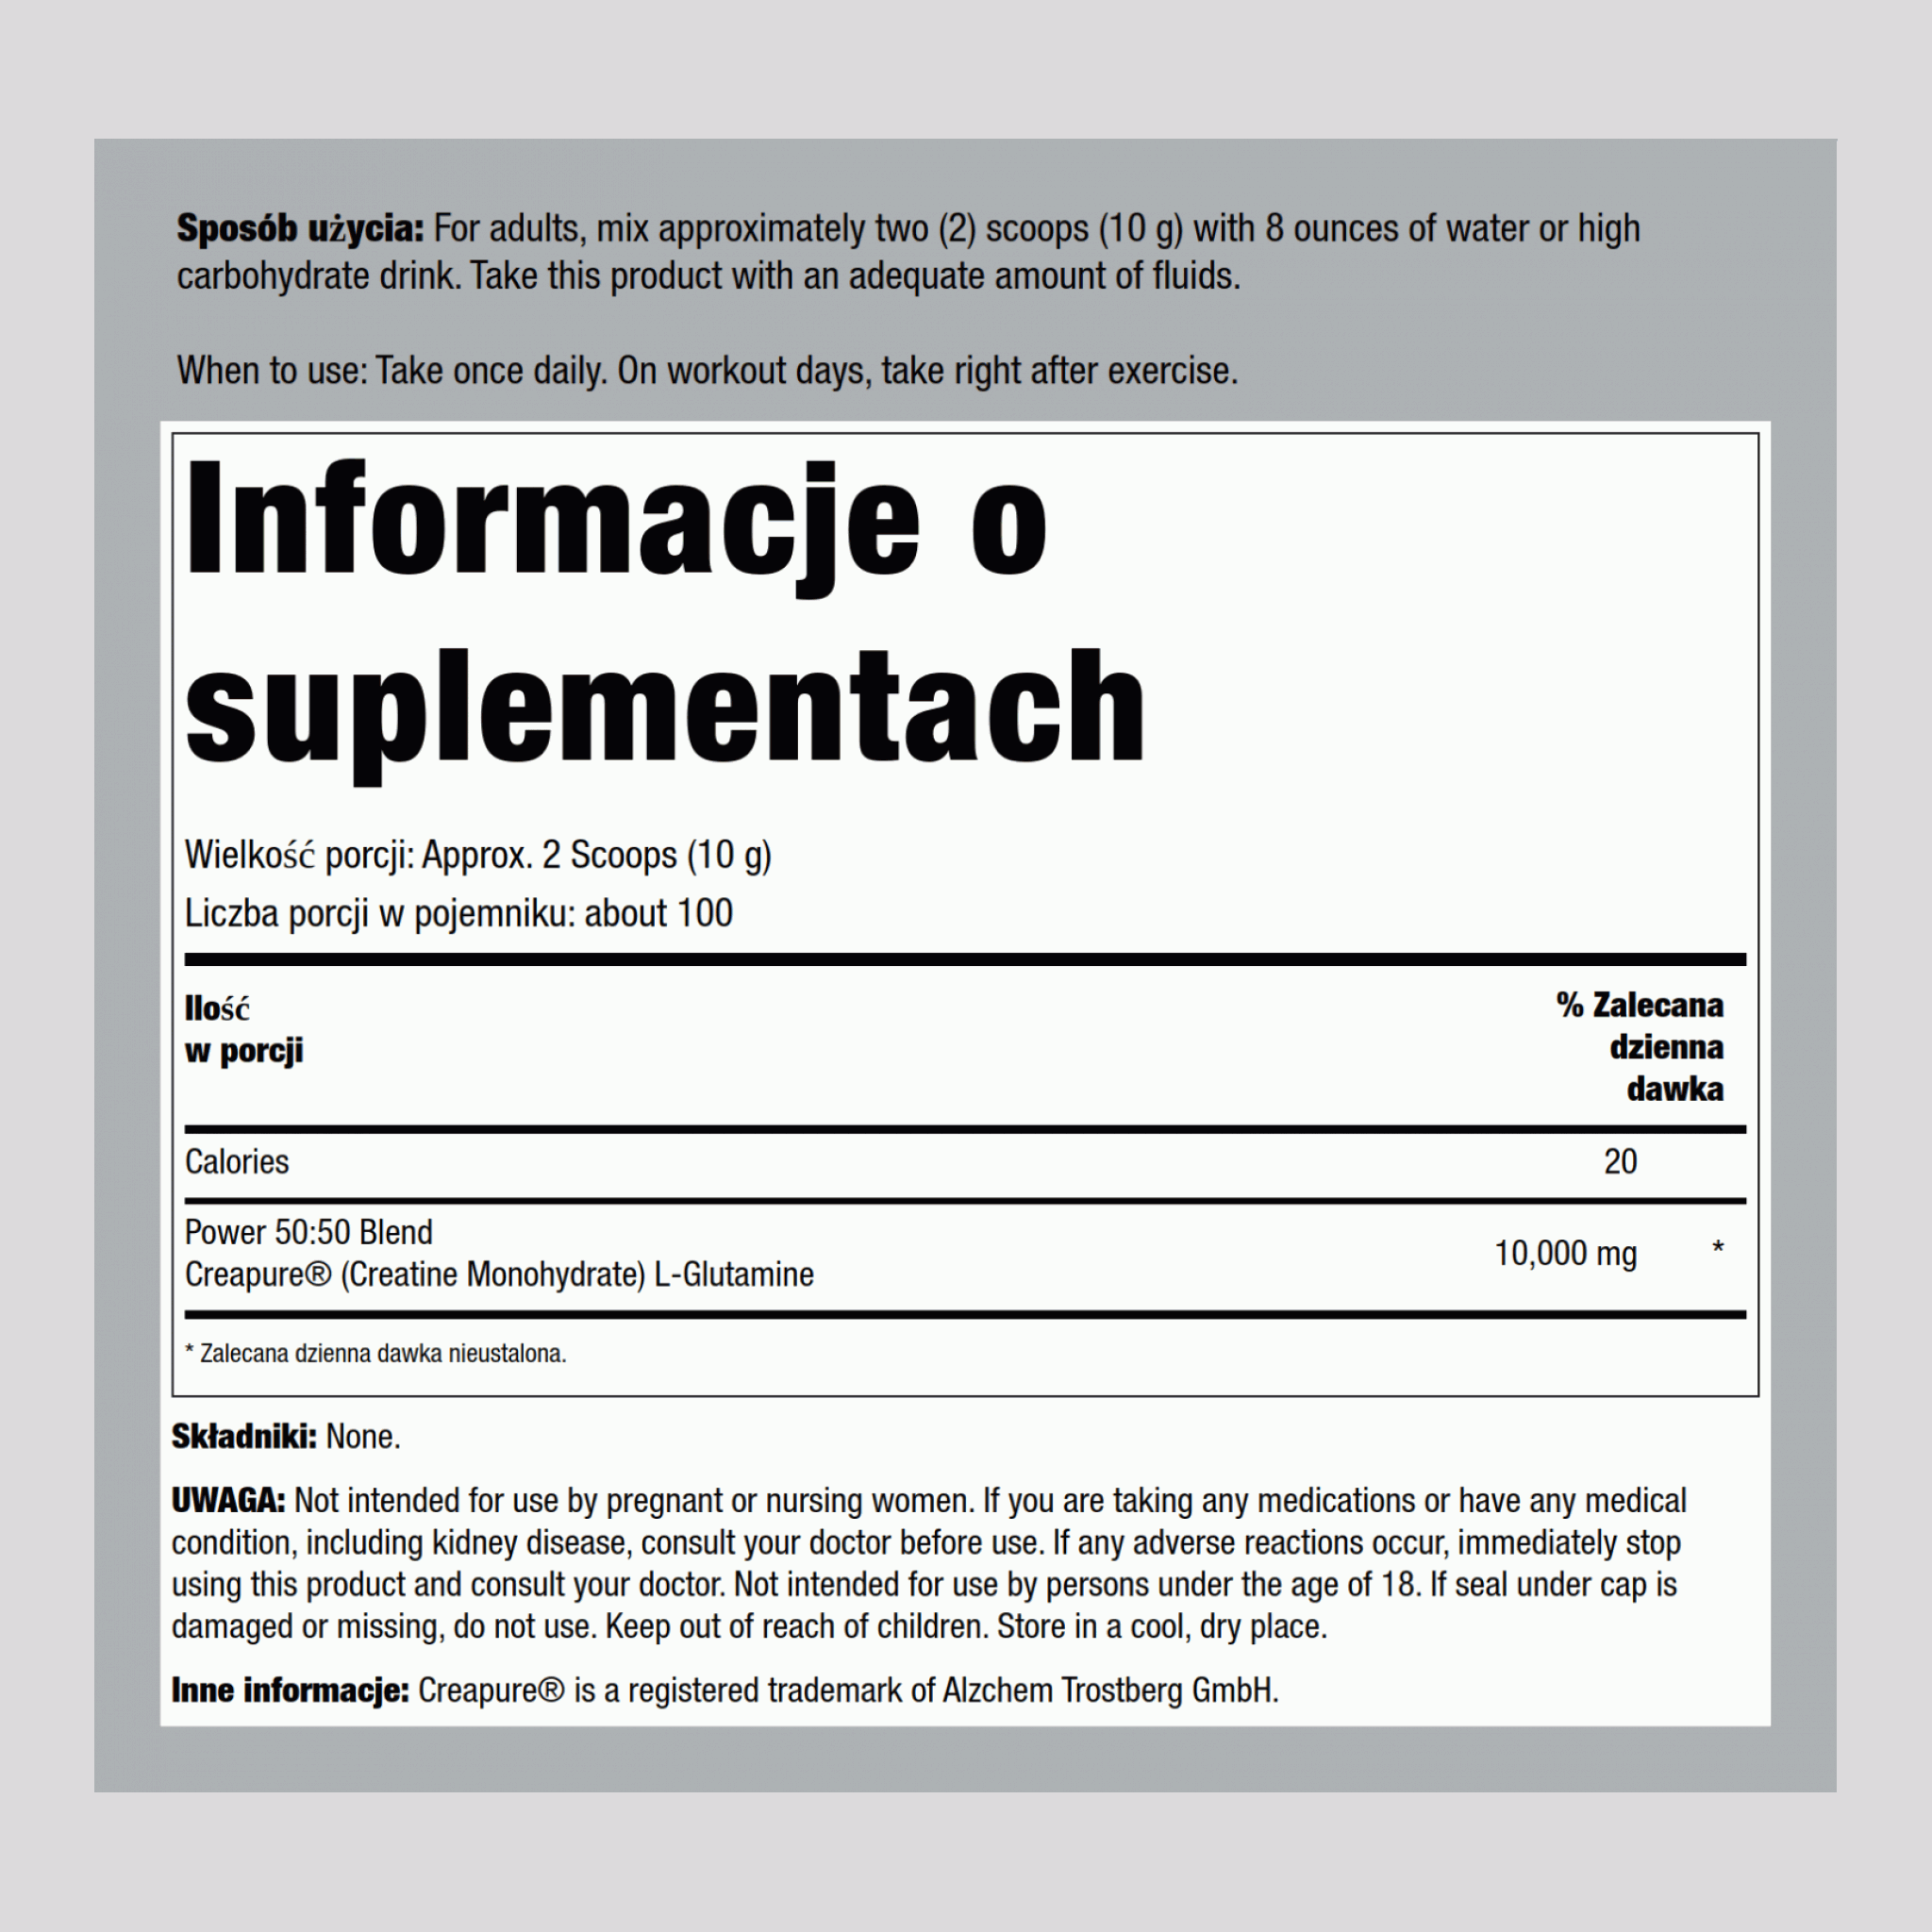 Niemiecka Monohydrat kretyny (Creapure) & L-glutamina w proszku (50:50 Mieszanka) 10 gramy (na porcję) 2.2 lb 1000 g Butelka  